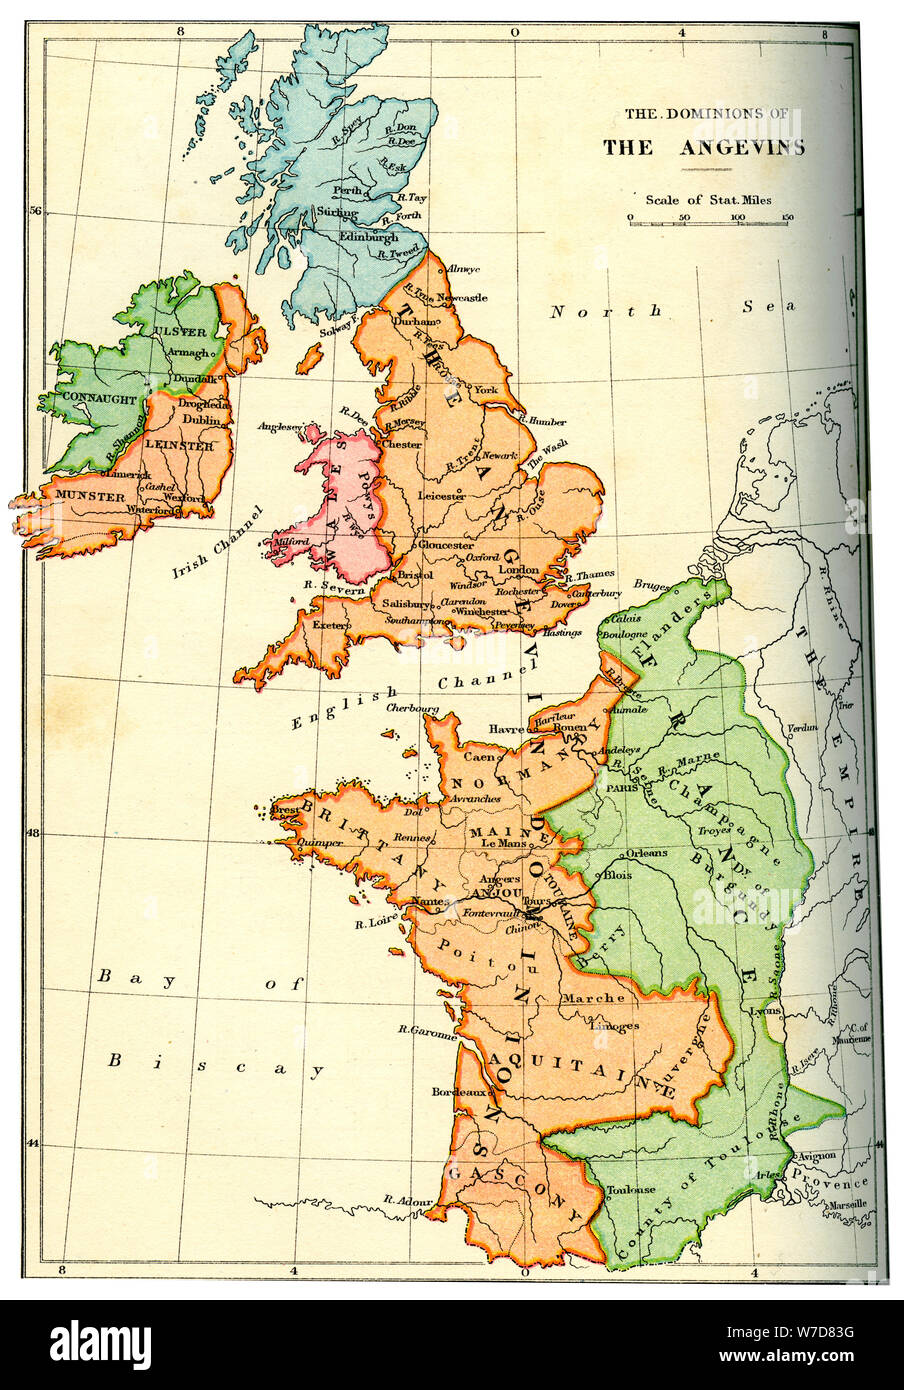 Les dominions de l'Angevins, 1892. Artiste : Inconnu Banque D'Images